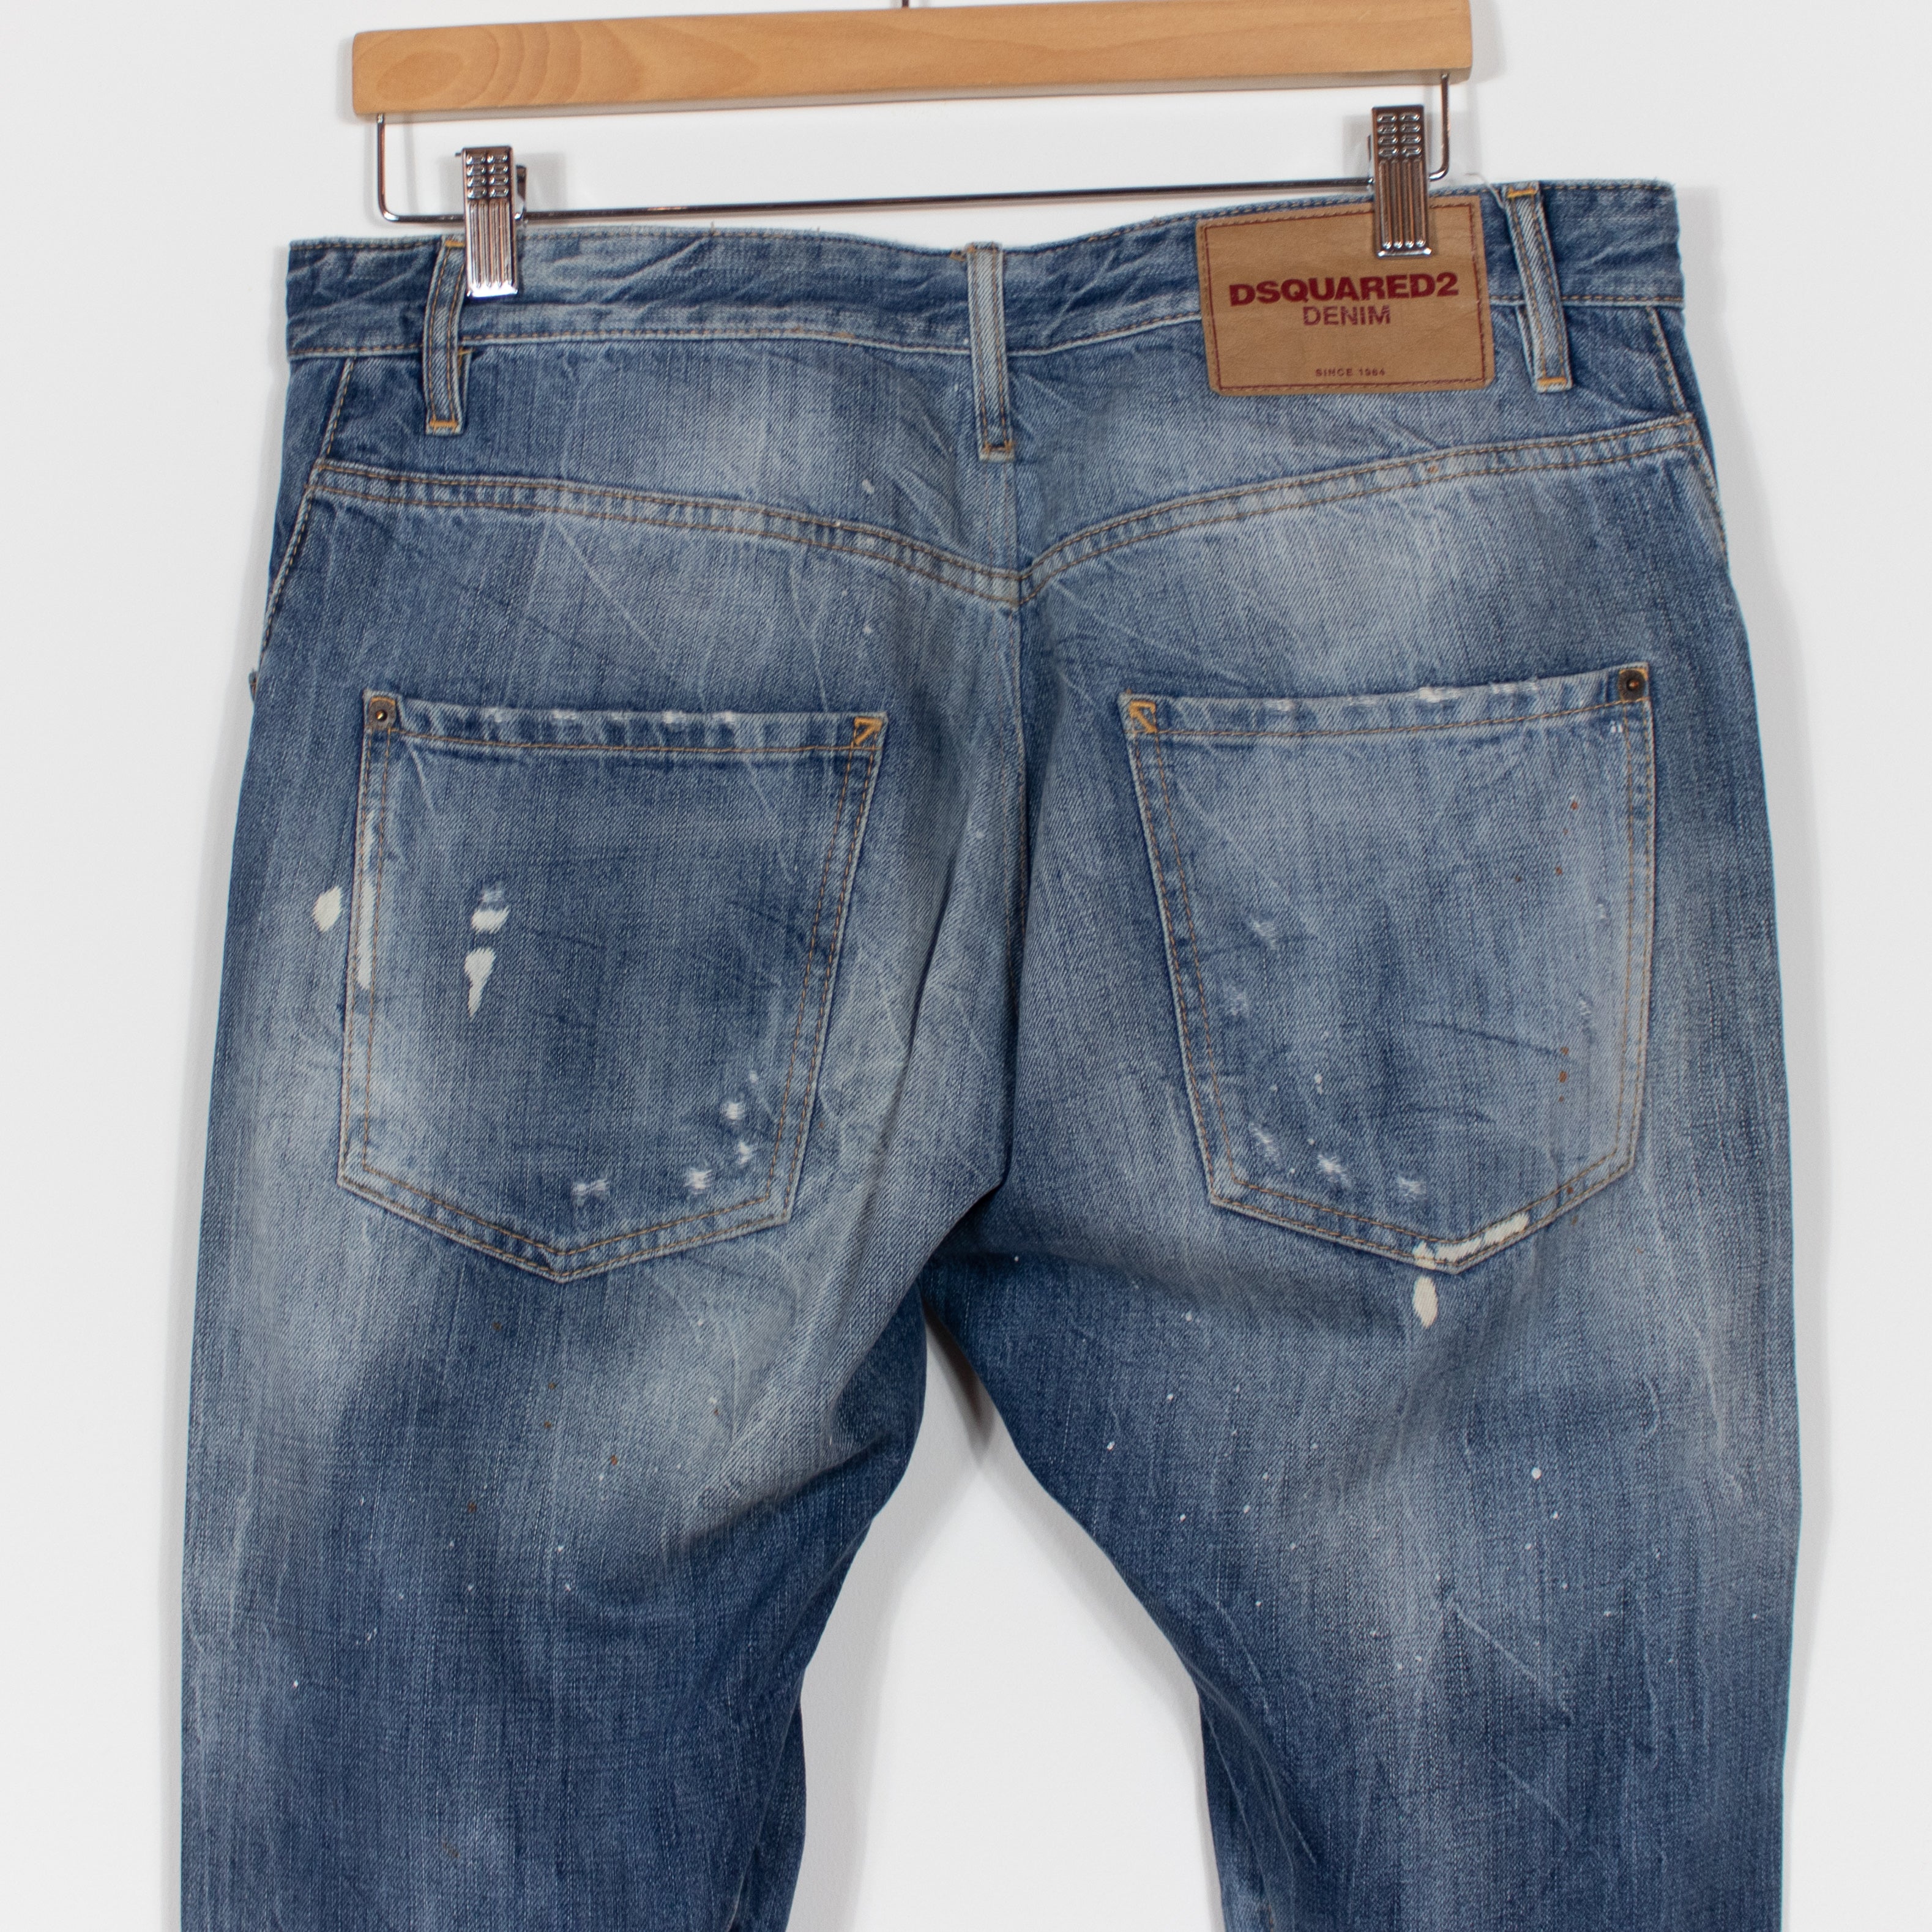 Lot Accessoire de rechange Bouton Pression en métal Pantalon Jeans  DSQUARED2